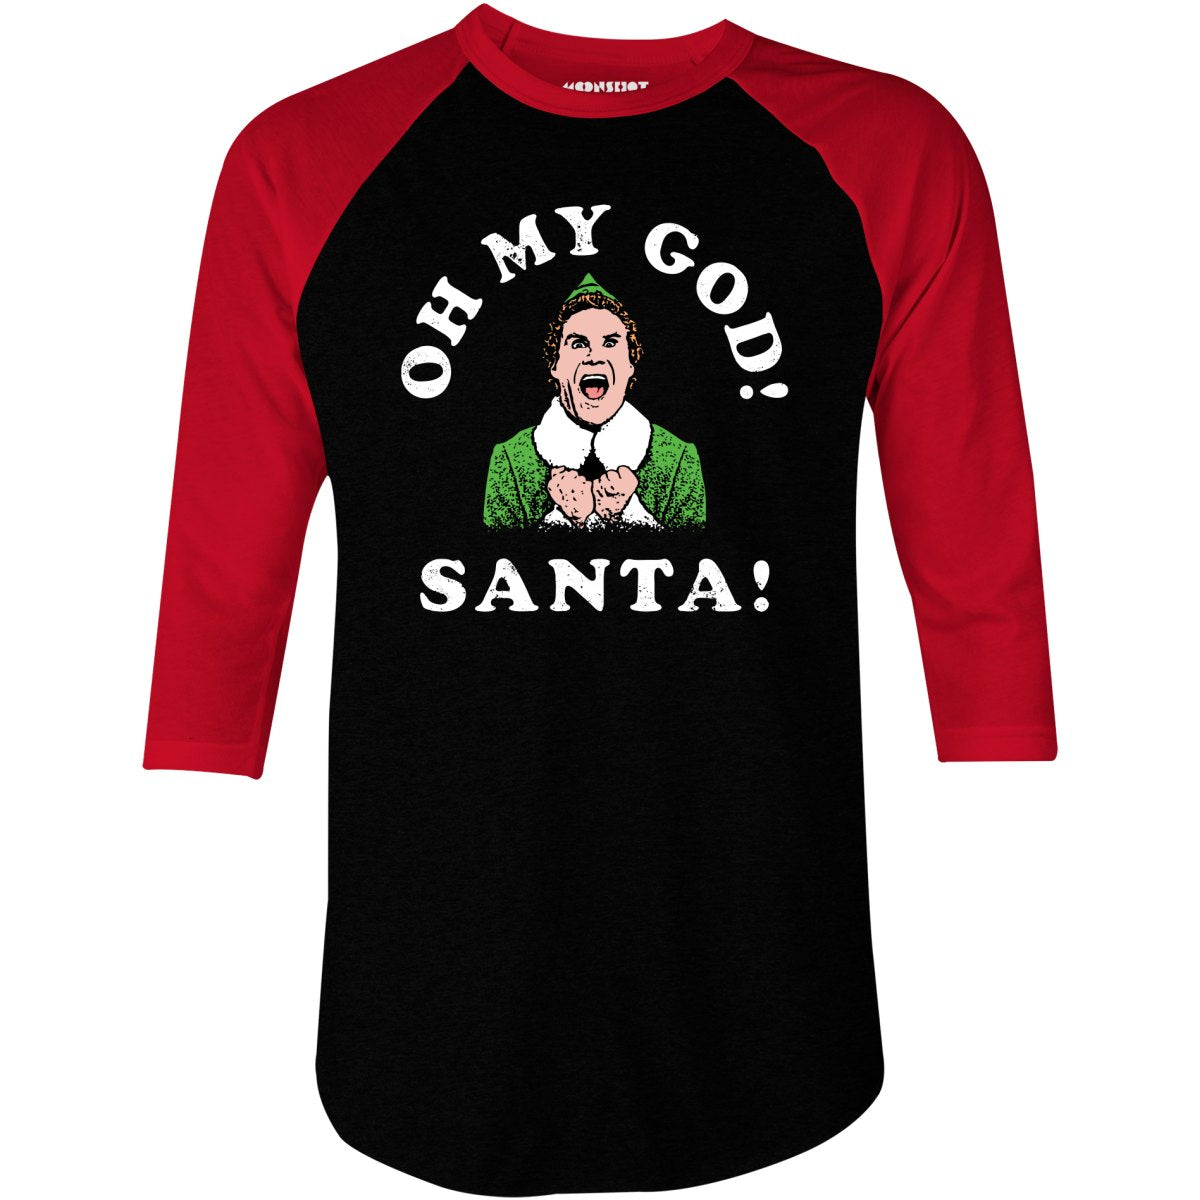 Oh My God Santa! - 3/4 Sleeve Raglan T-Shirt